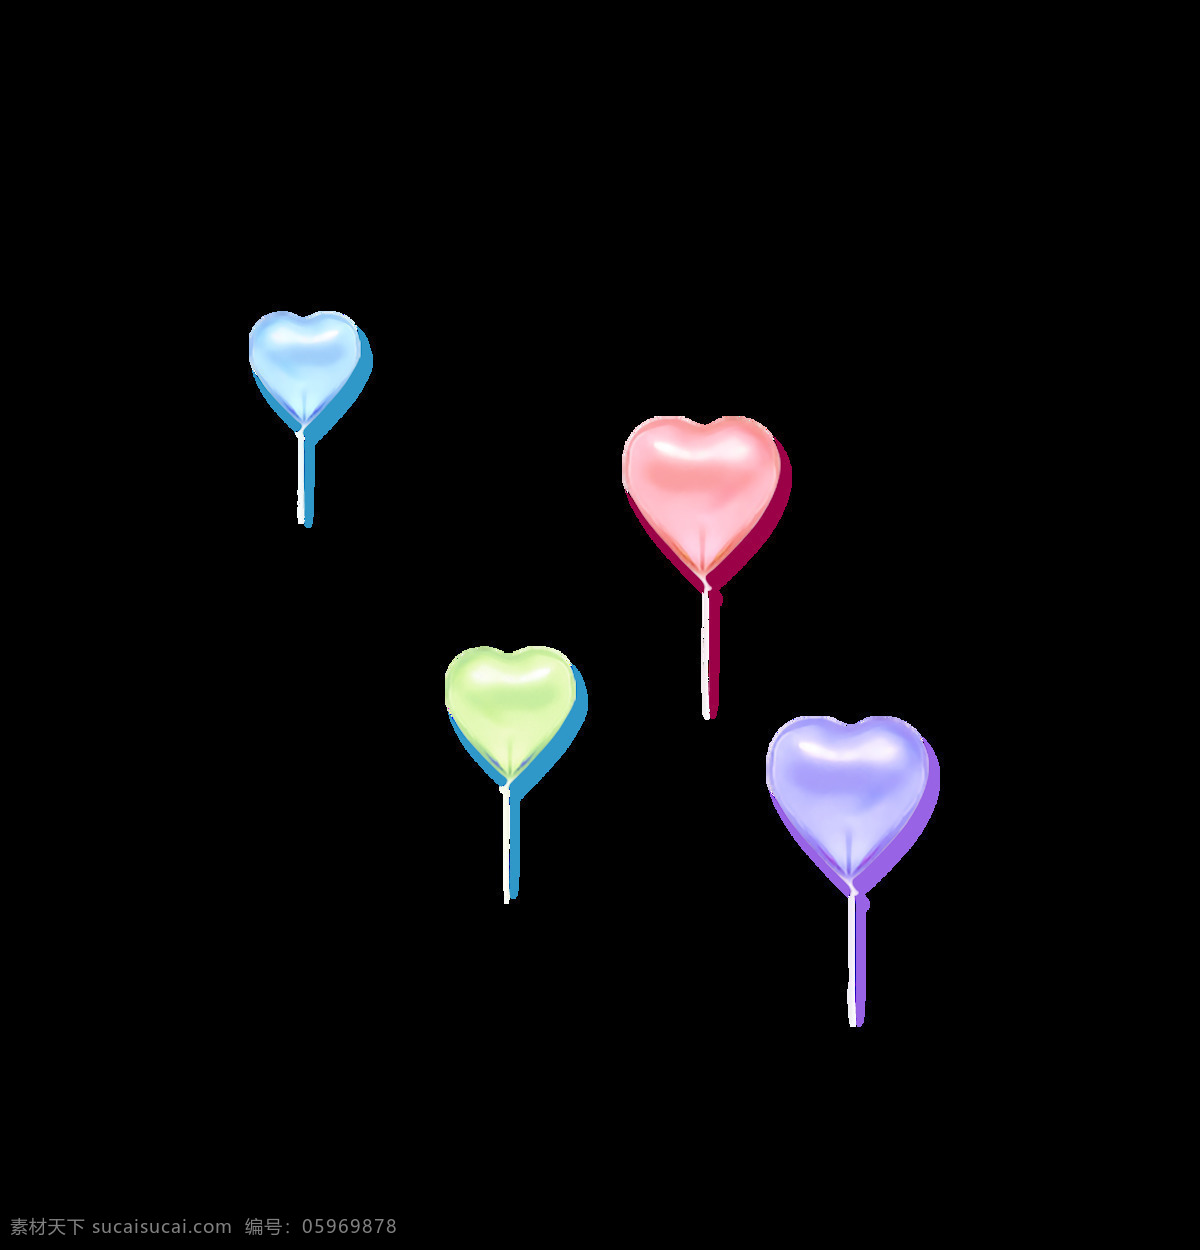 彩色 立体 心形 气球 装饰 蓝色 粉色 飘浮